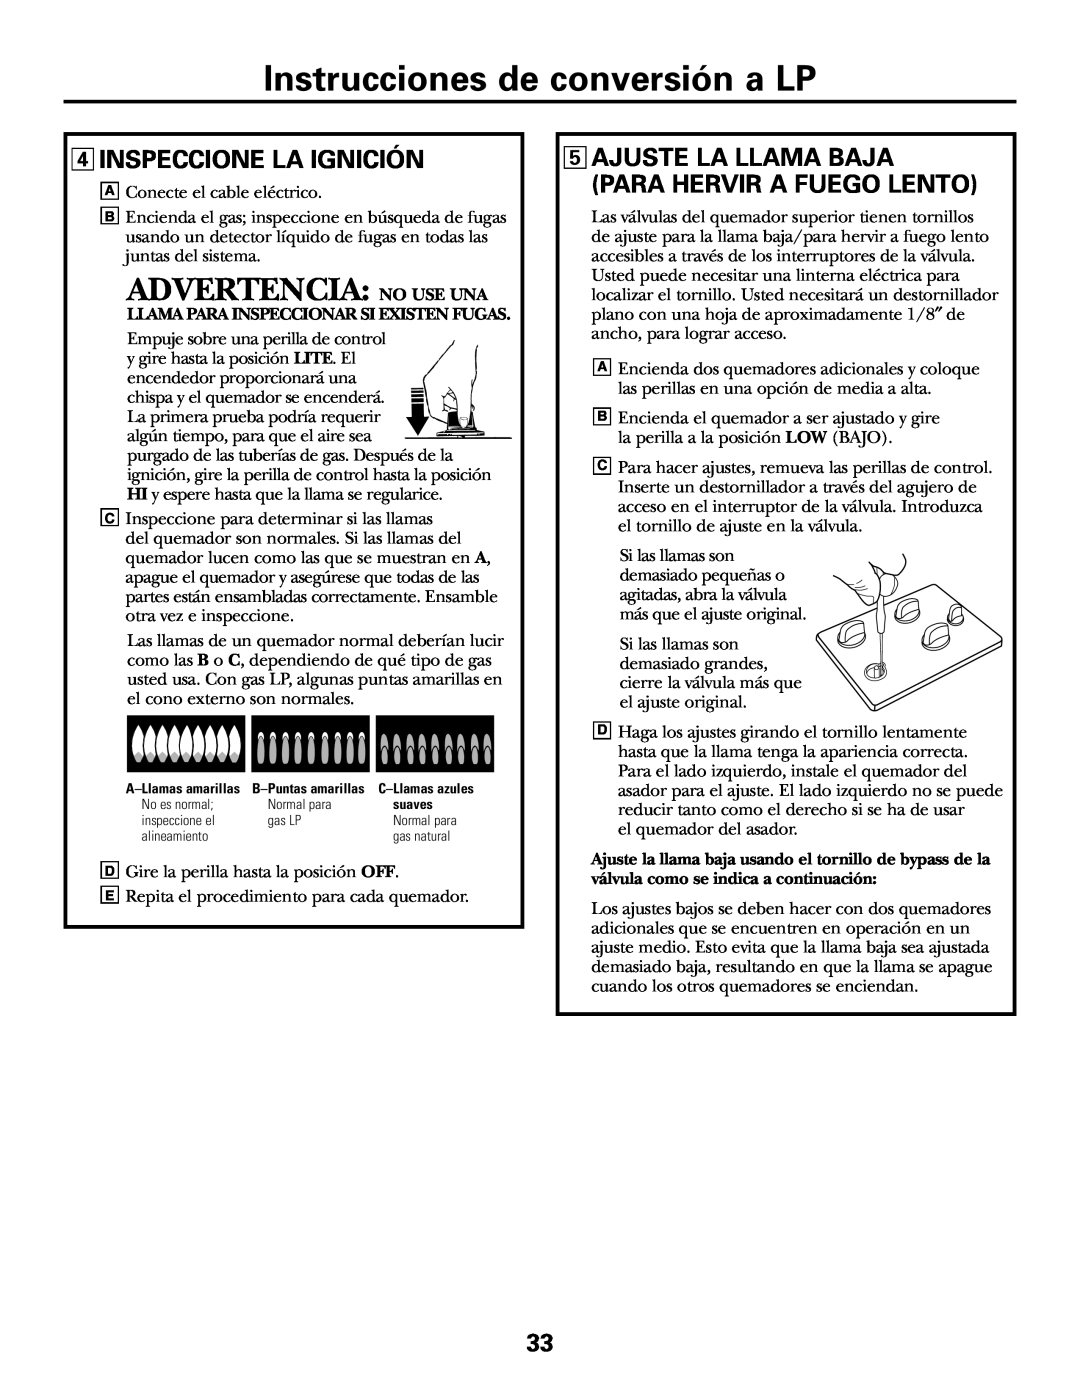 GE JGP985 owner manual Advertencia No Use Una, Instrucciones de conversión a LP, 4INSPECCIONE LA IGNICIÓN 